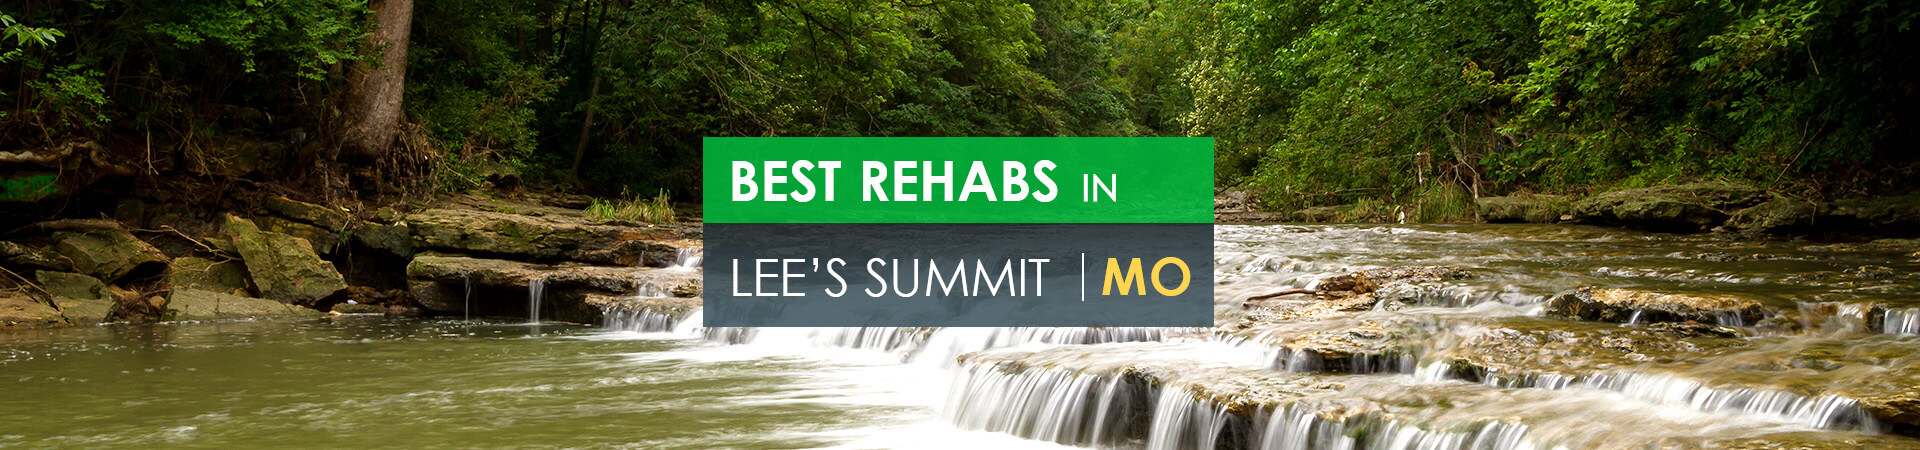 Best rehabs in Lees Summit, MO